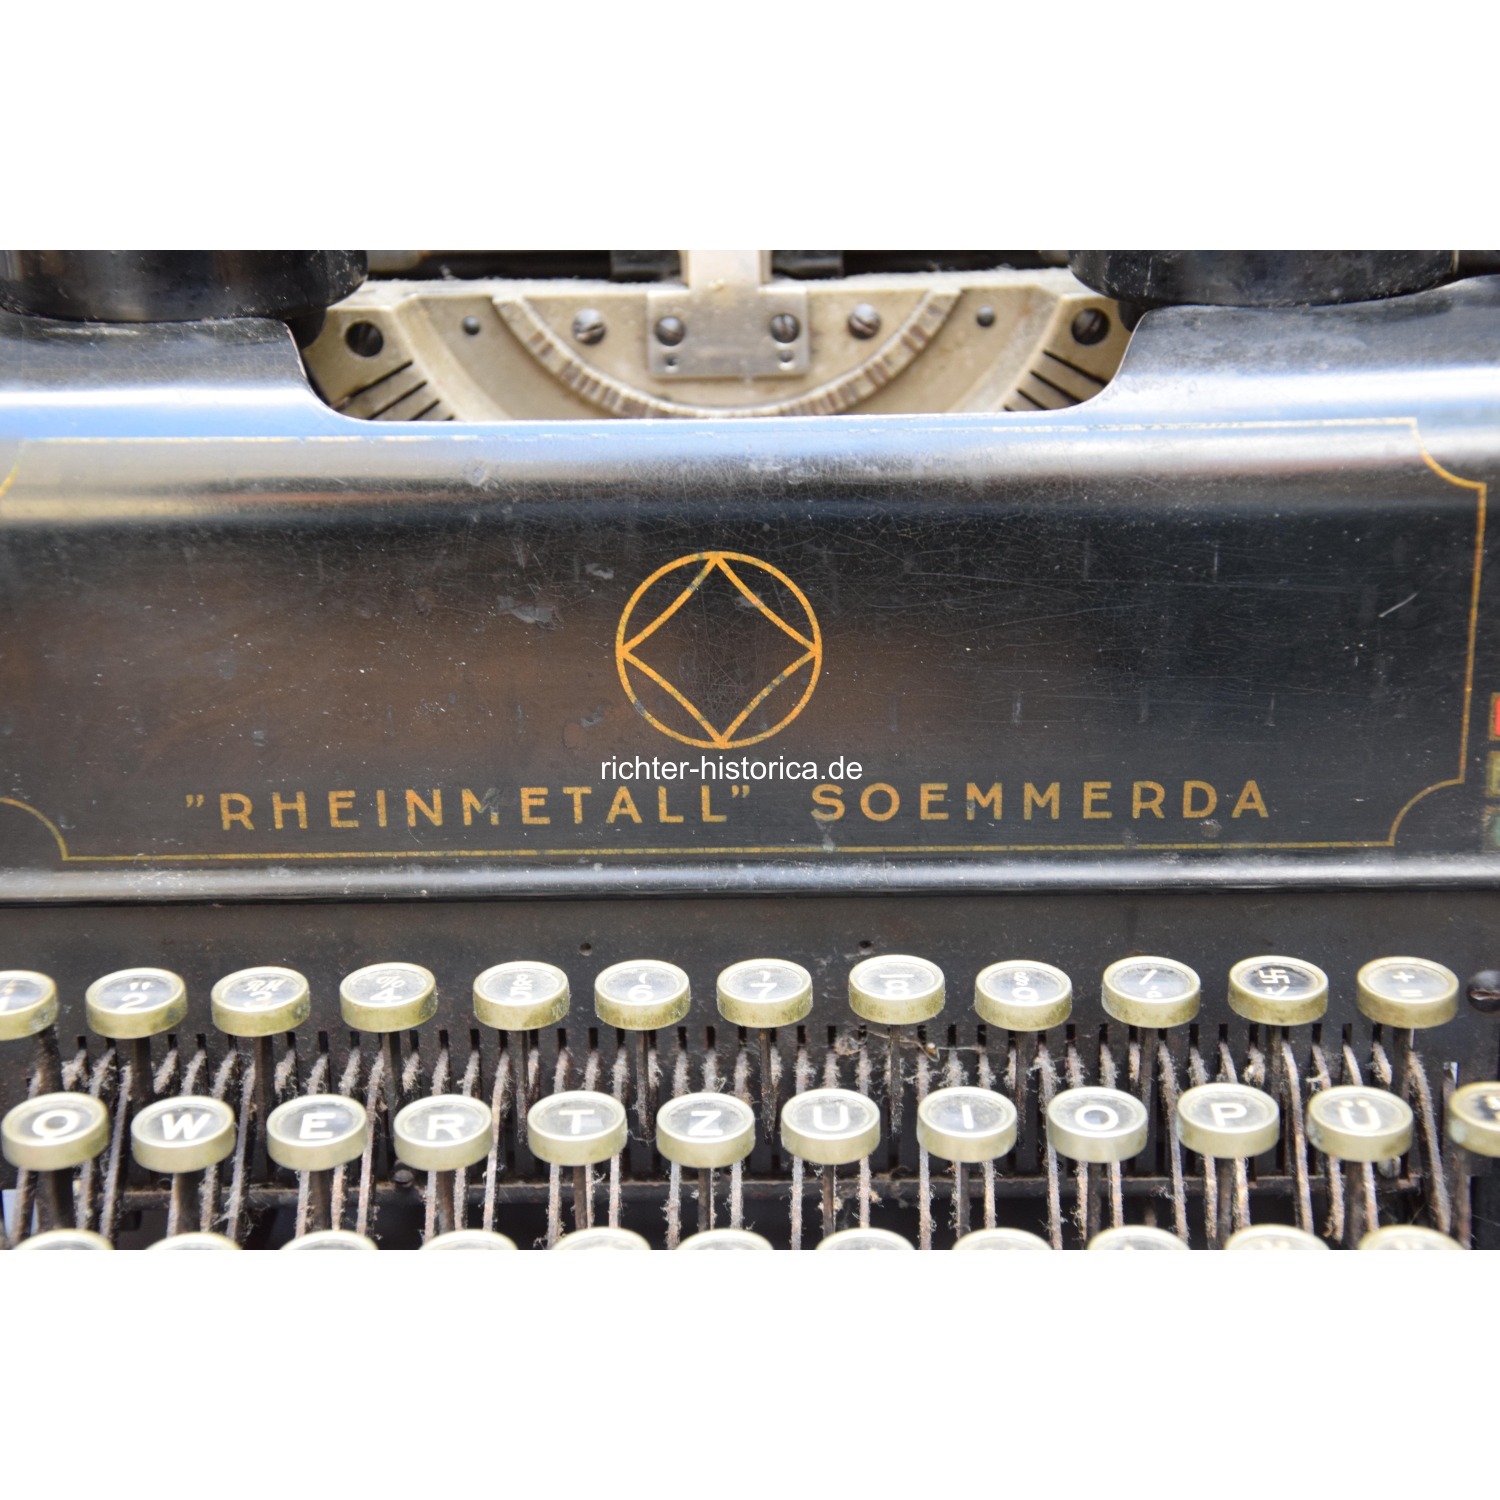 2.Weltkrieg Schreibmaschine „Rheinmetall“ mit HK Taste, selten!